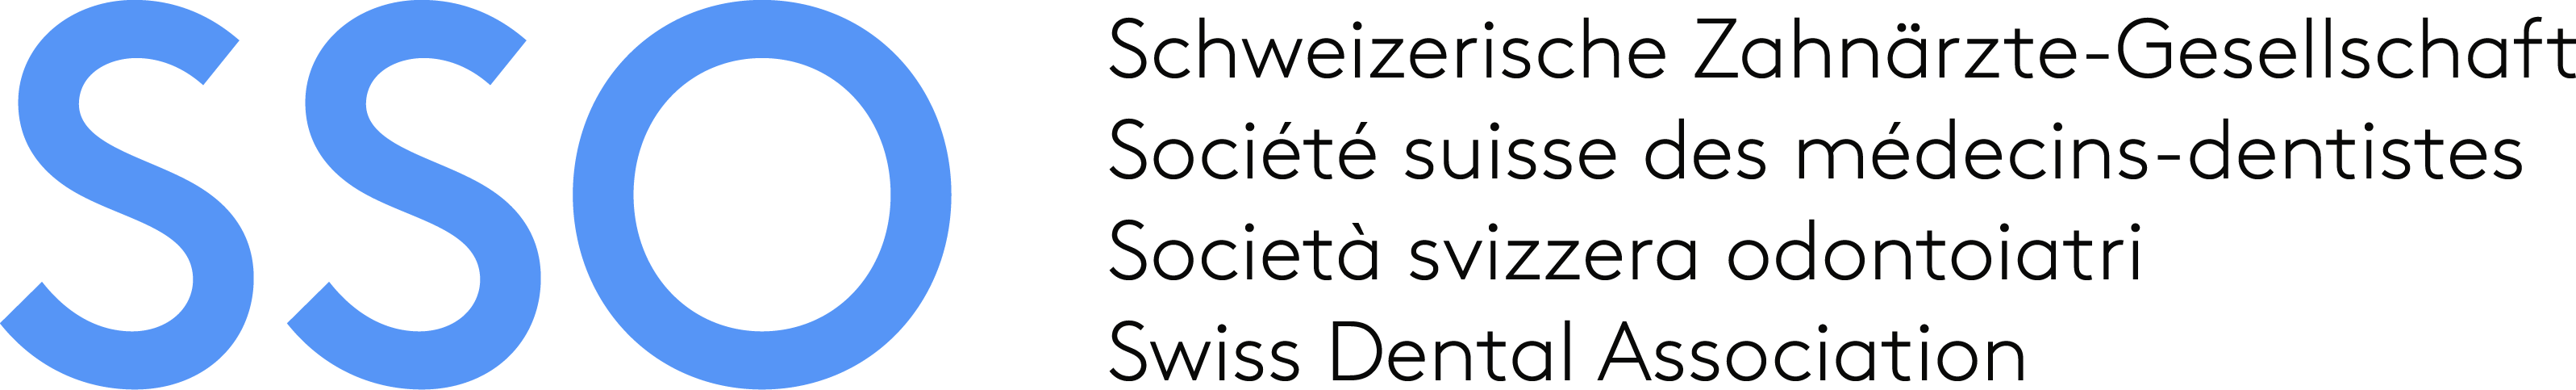 Logo SSO